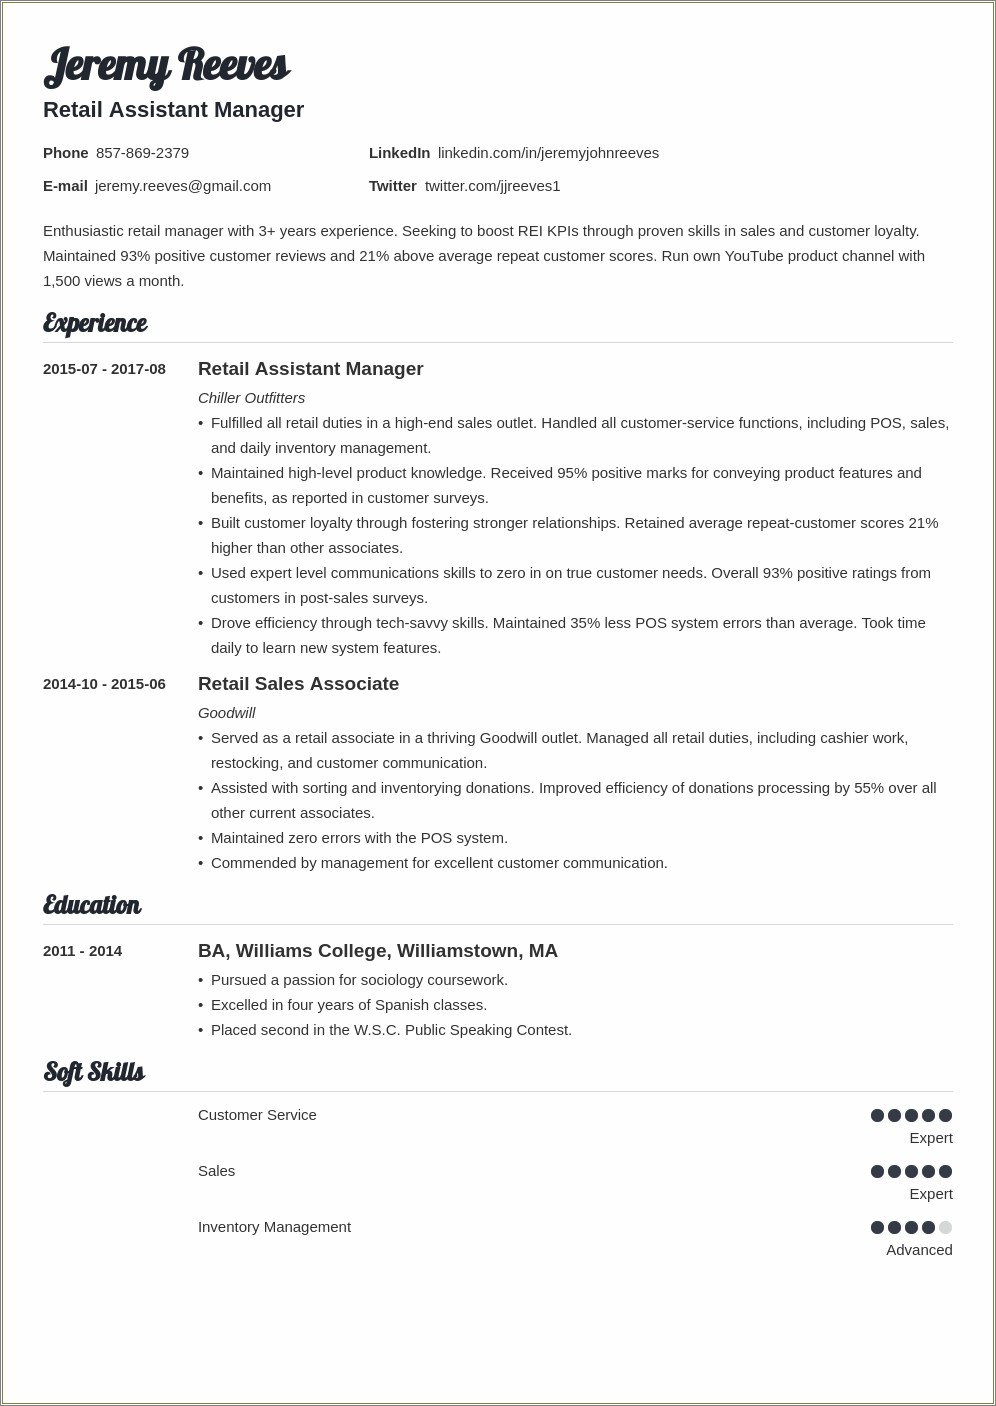 Retail Assistant Manager Job Description Resume